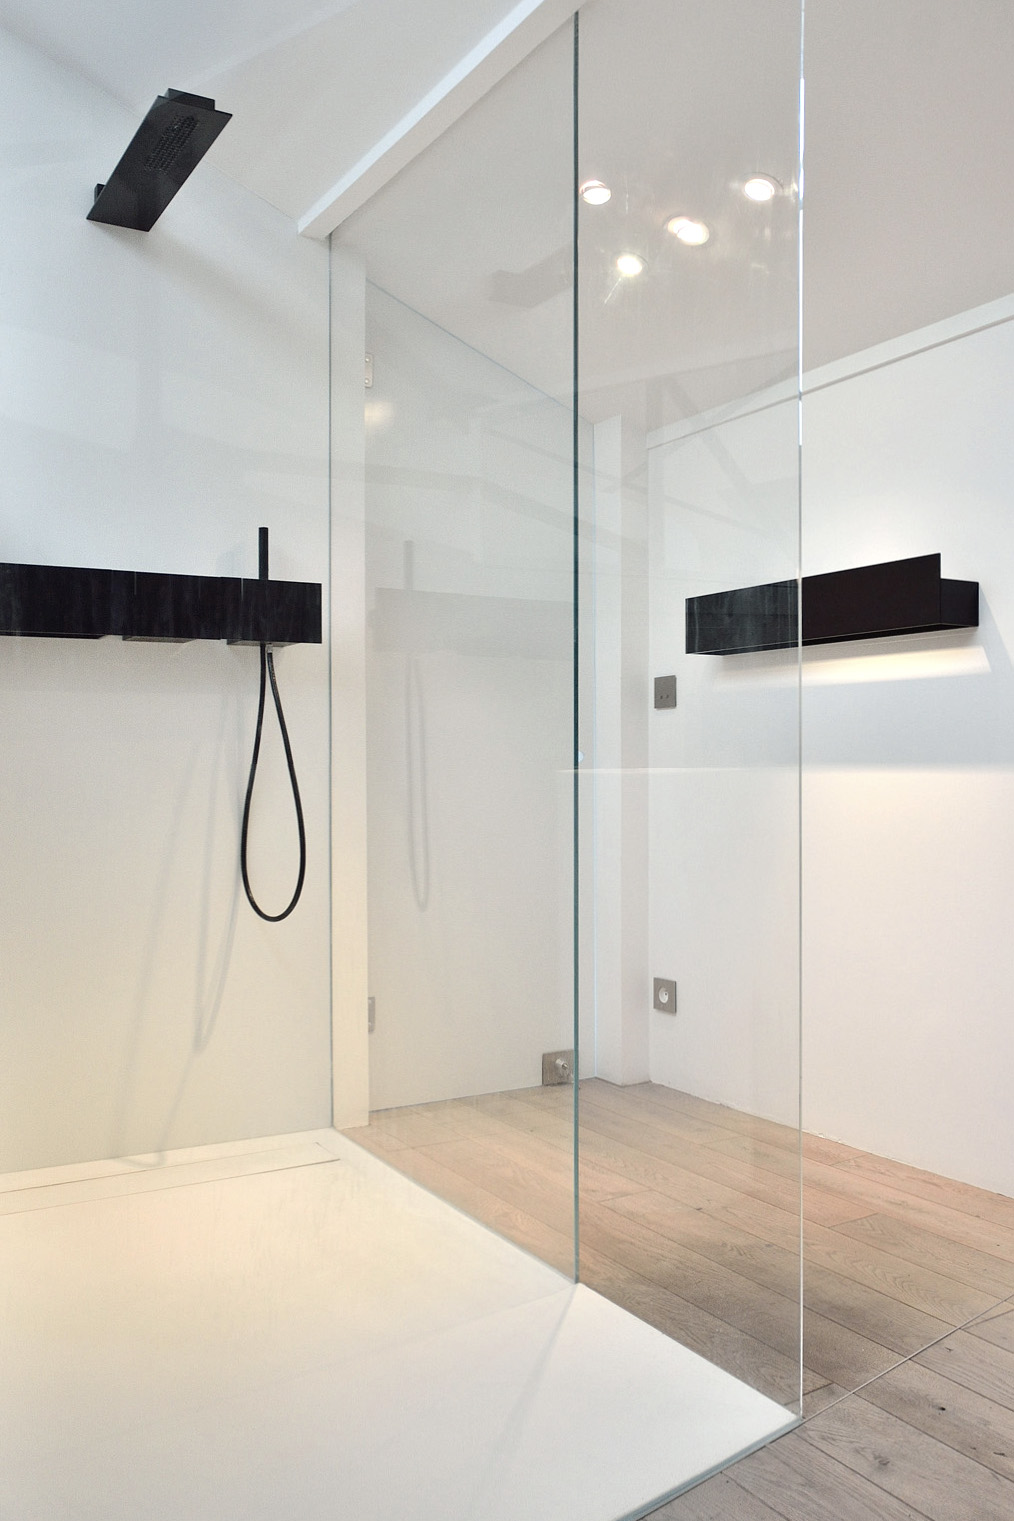 Projet Fernand : aménagement intérieur partiel d’un loft - Salle de bain, Agence Oz by cath, architecture d'intérieur